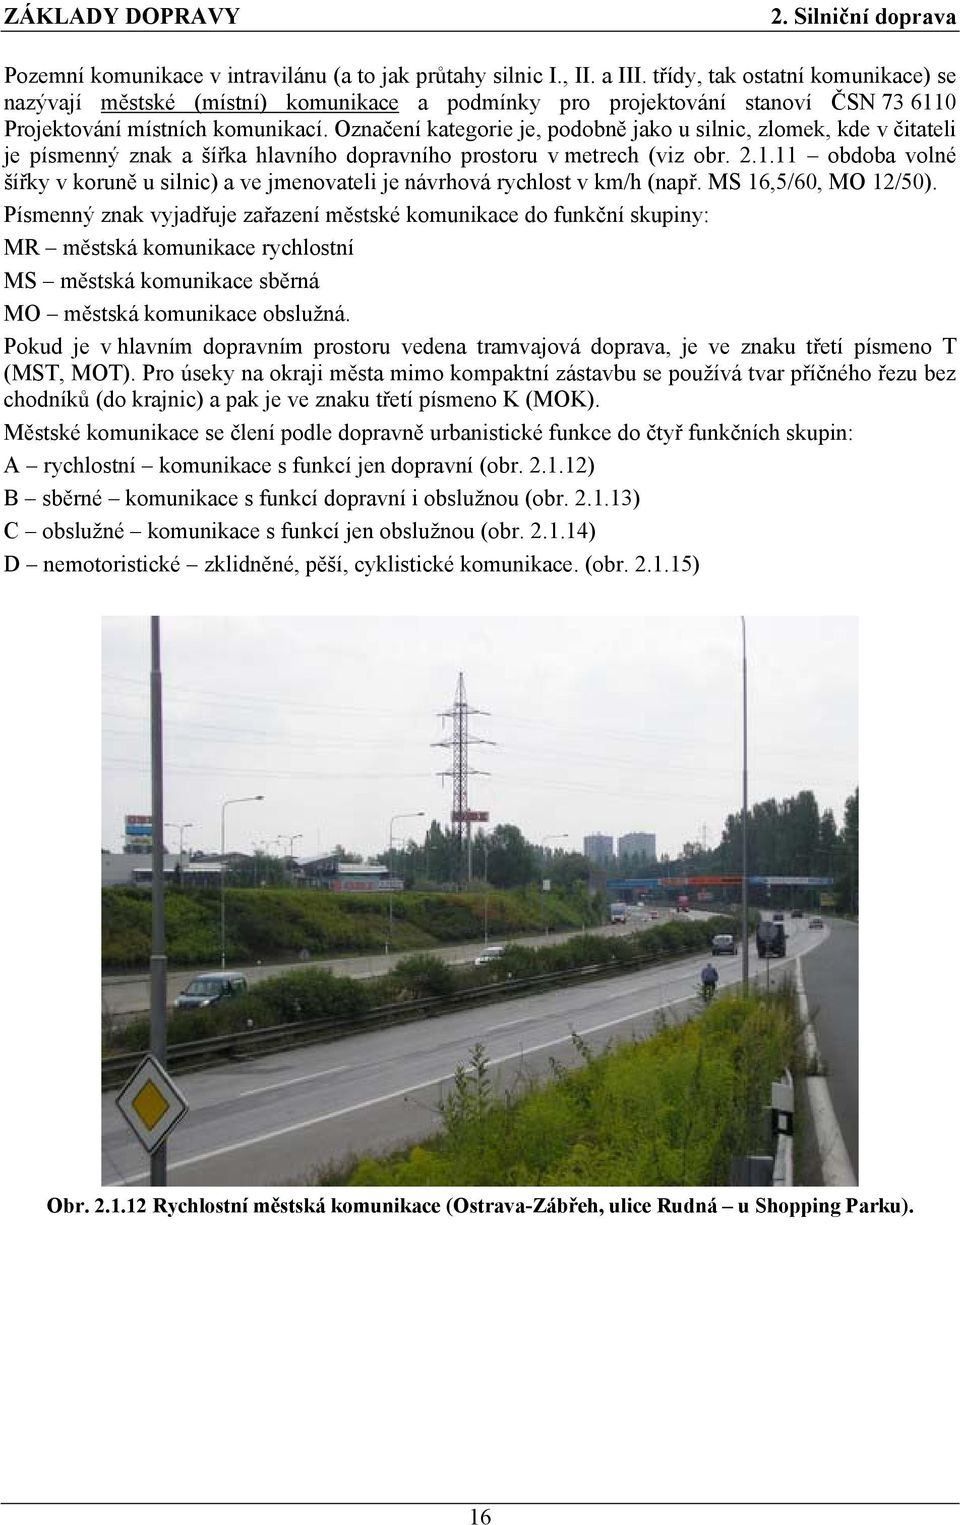 Označení kategorie je, podobně jako u silnic, zlomek, kde v čitateli je písmenný znak a šířka hlavního dopravního prostoru v metrech (viz obr. 2.1.